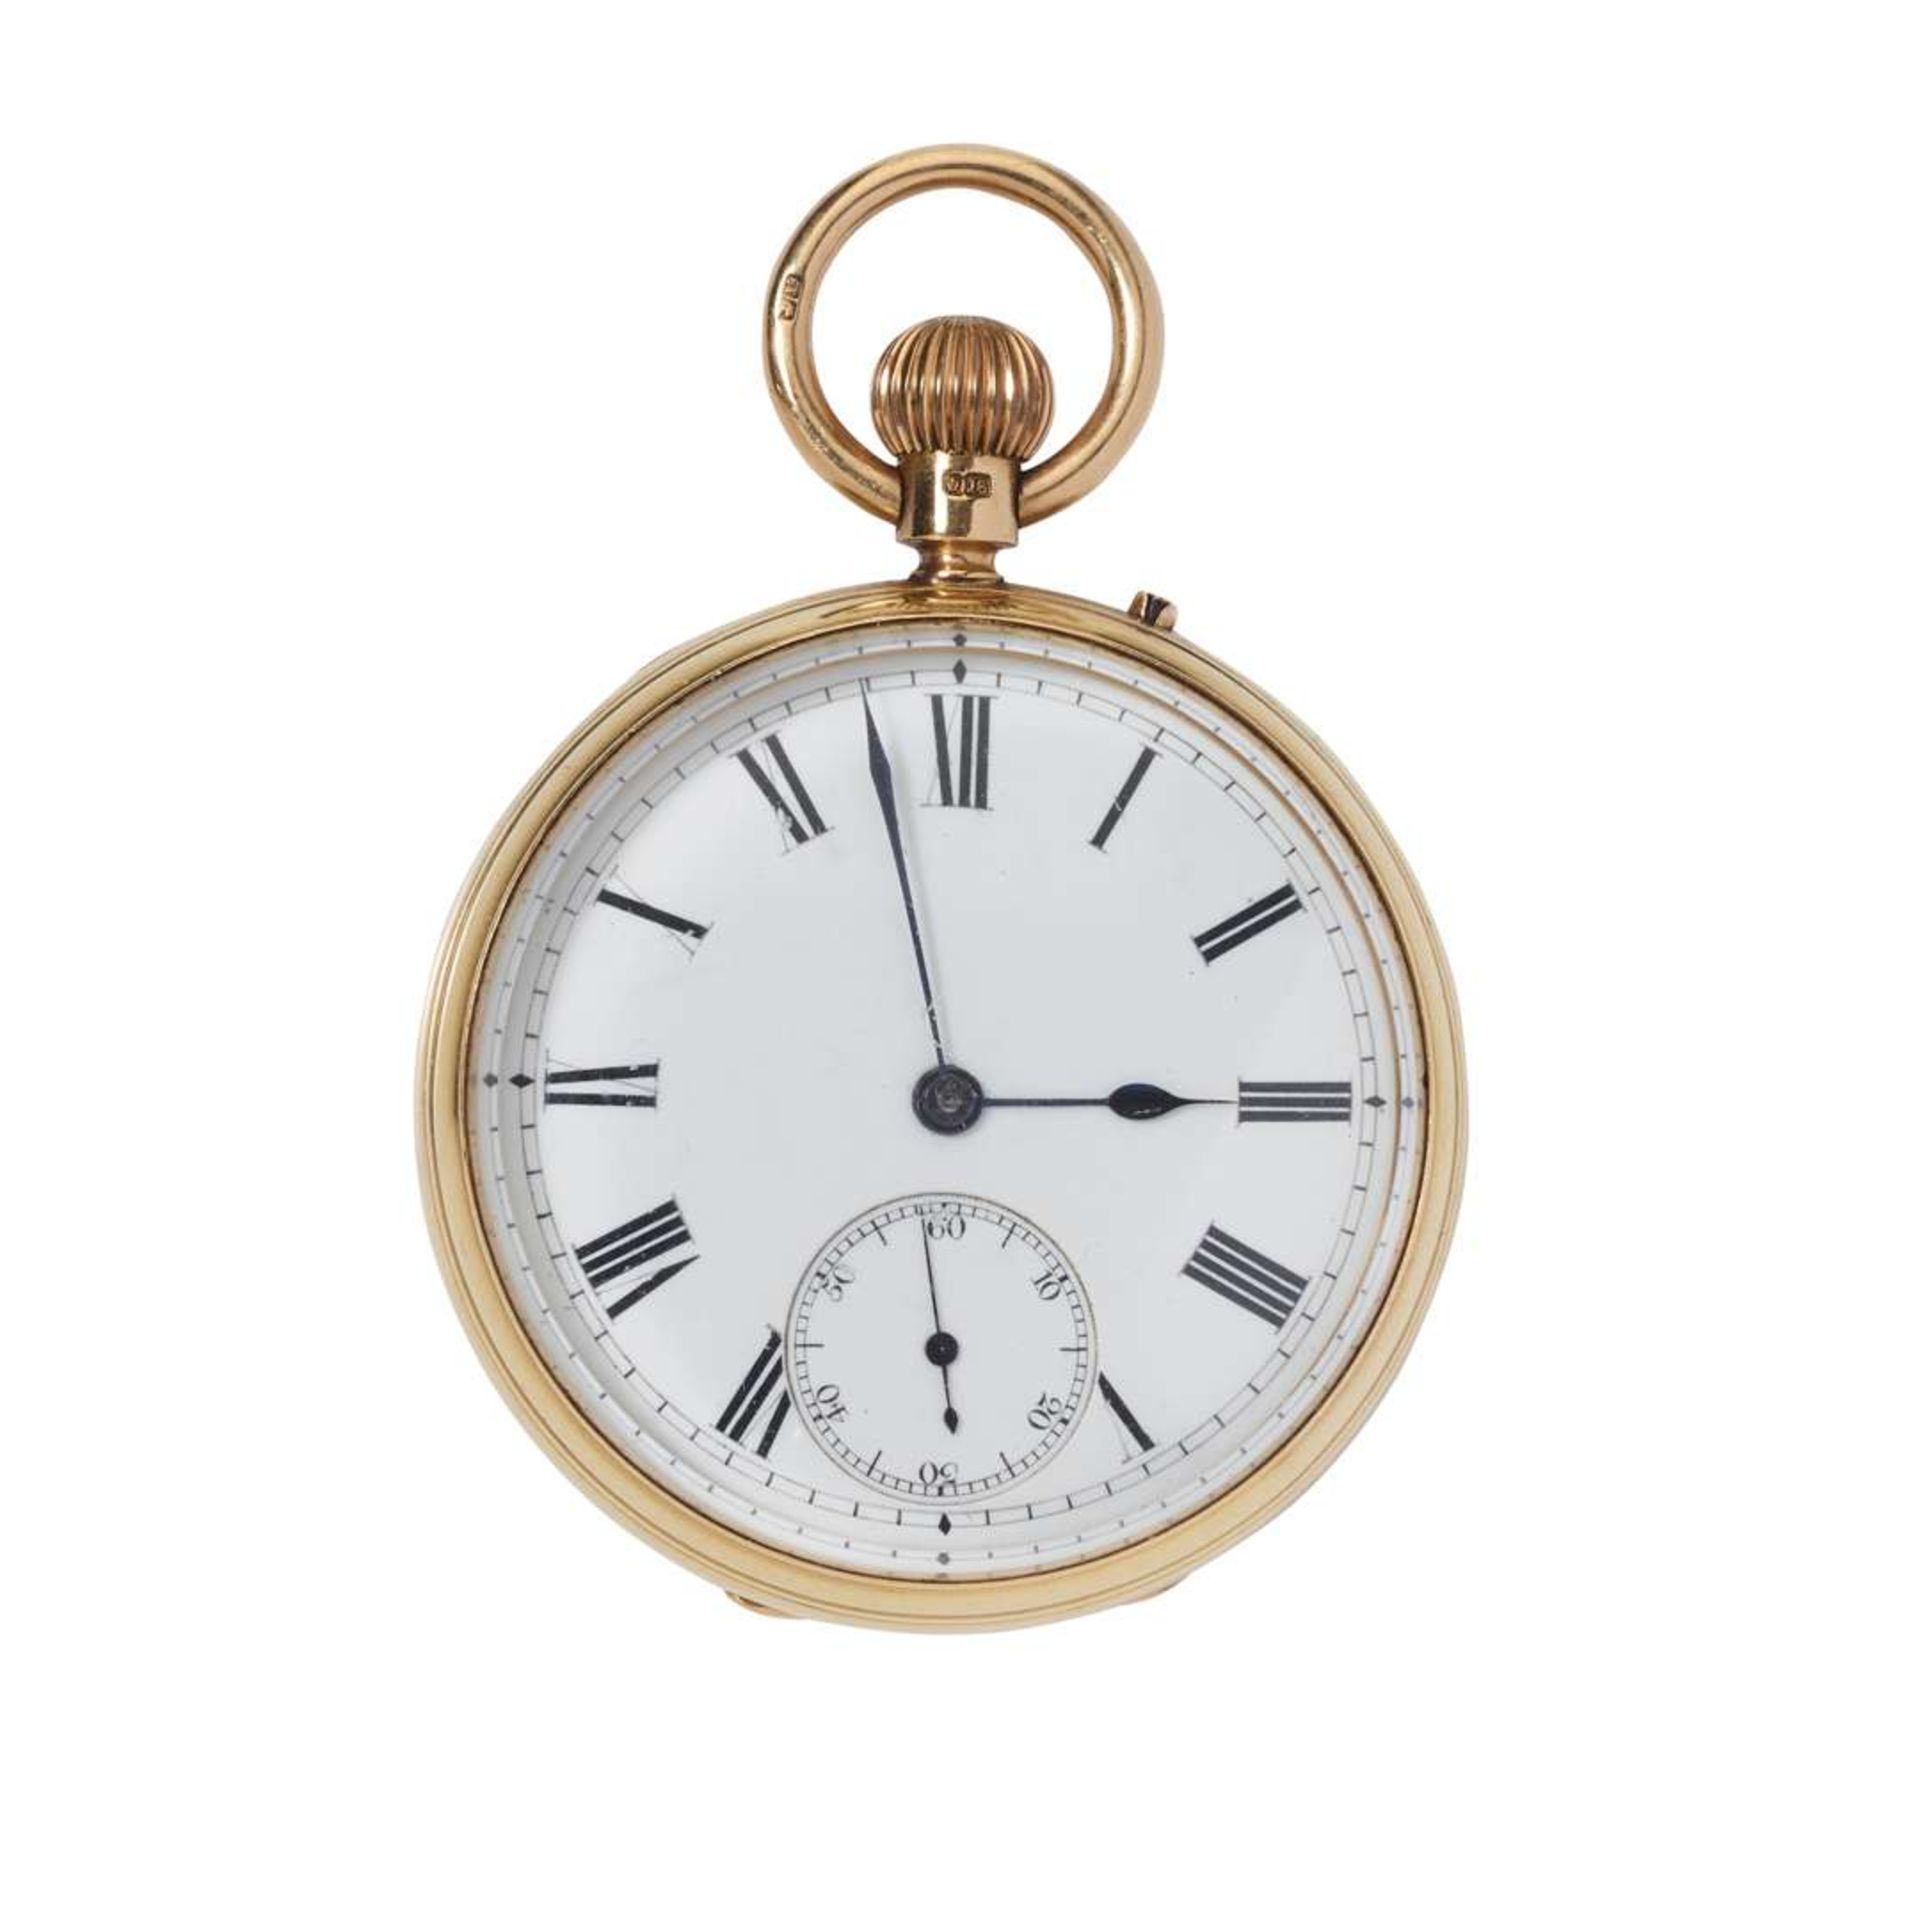 A. Samuel & Son, London. An 18k gold keyless open face pocket watch